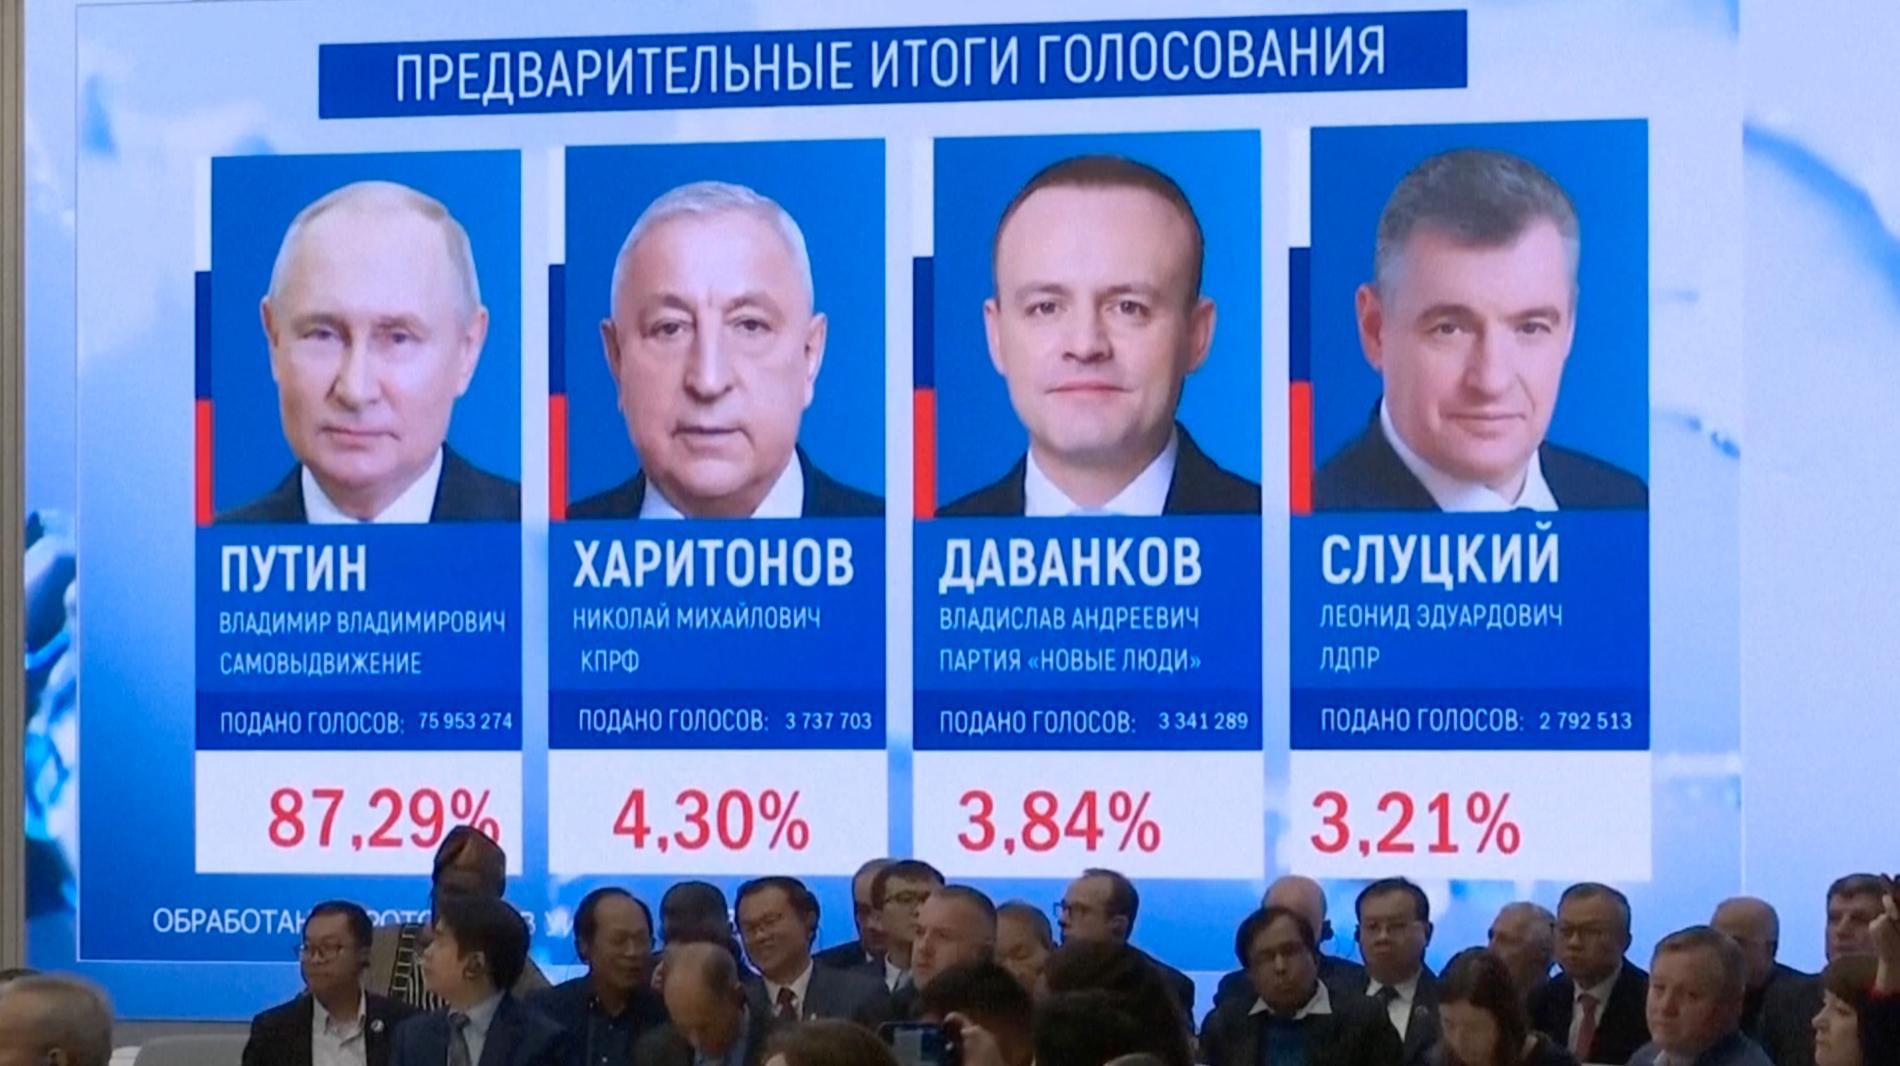  Putin segrade i ”låtsasvalet”  med 87,3 procent.